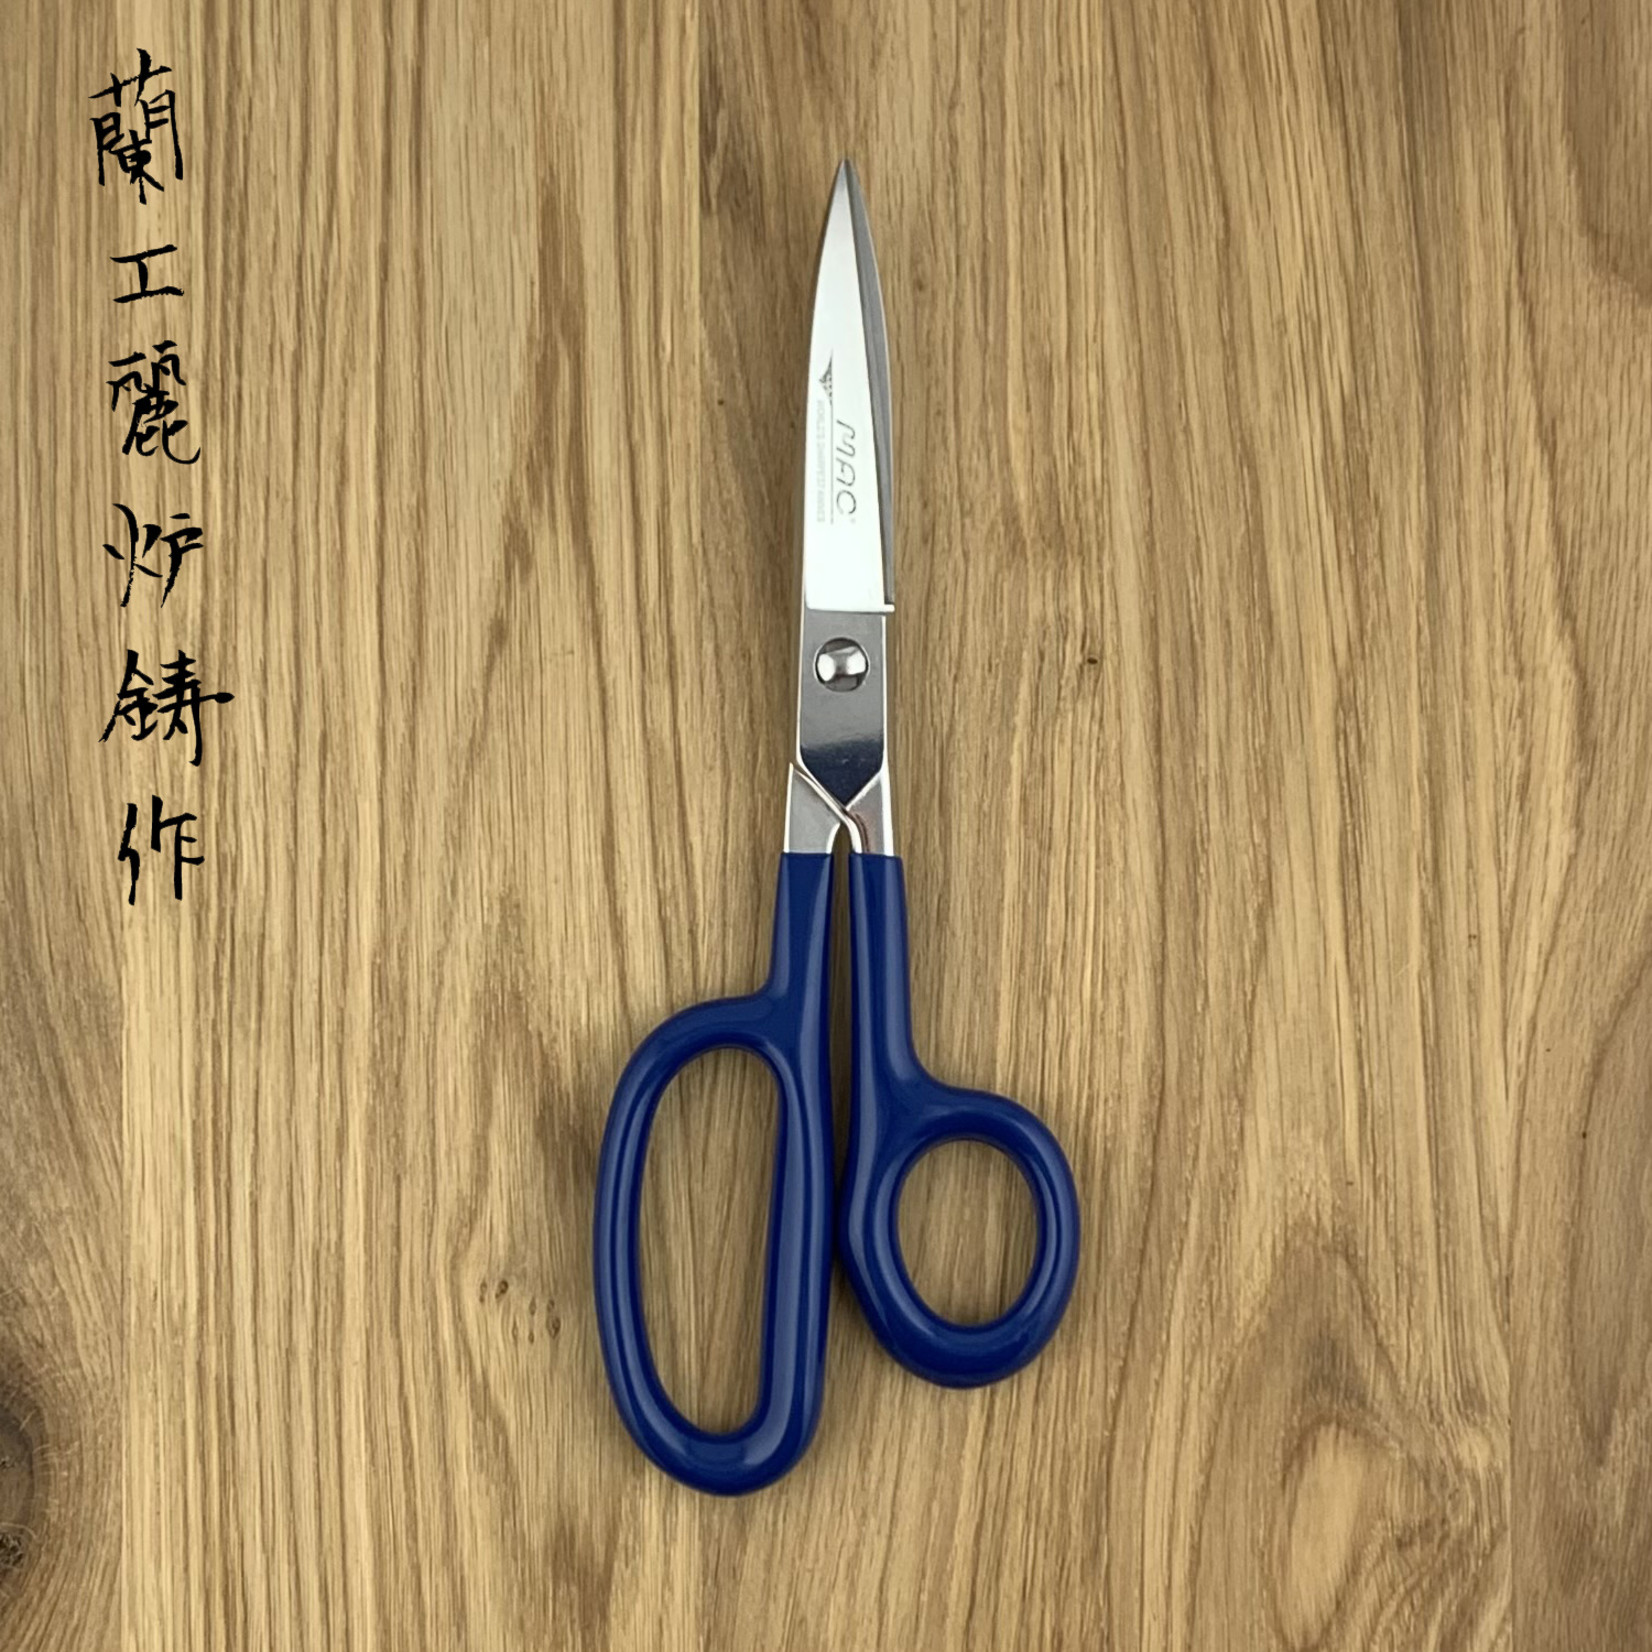 MAC Professional Scissors KS-85